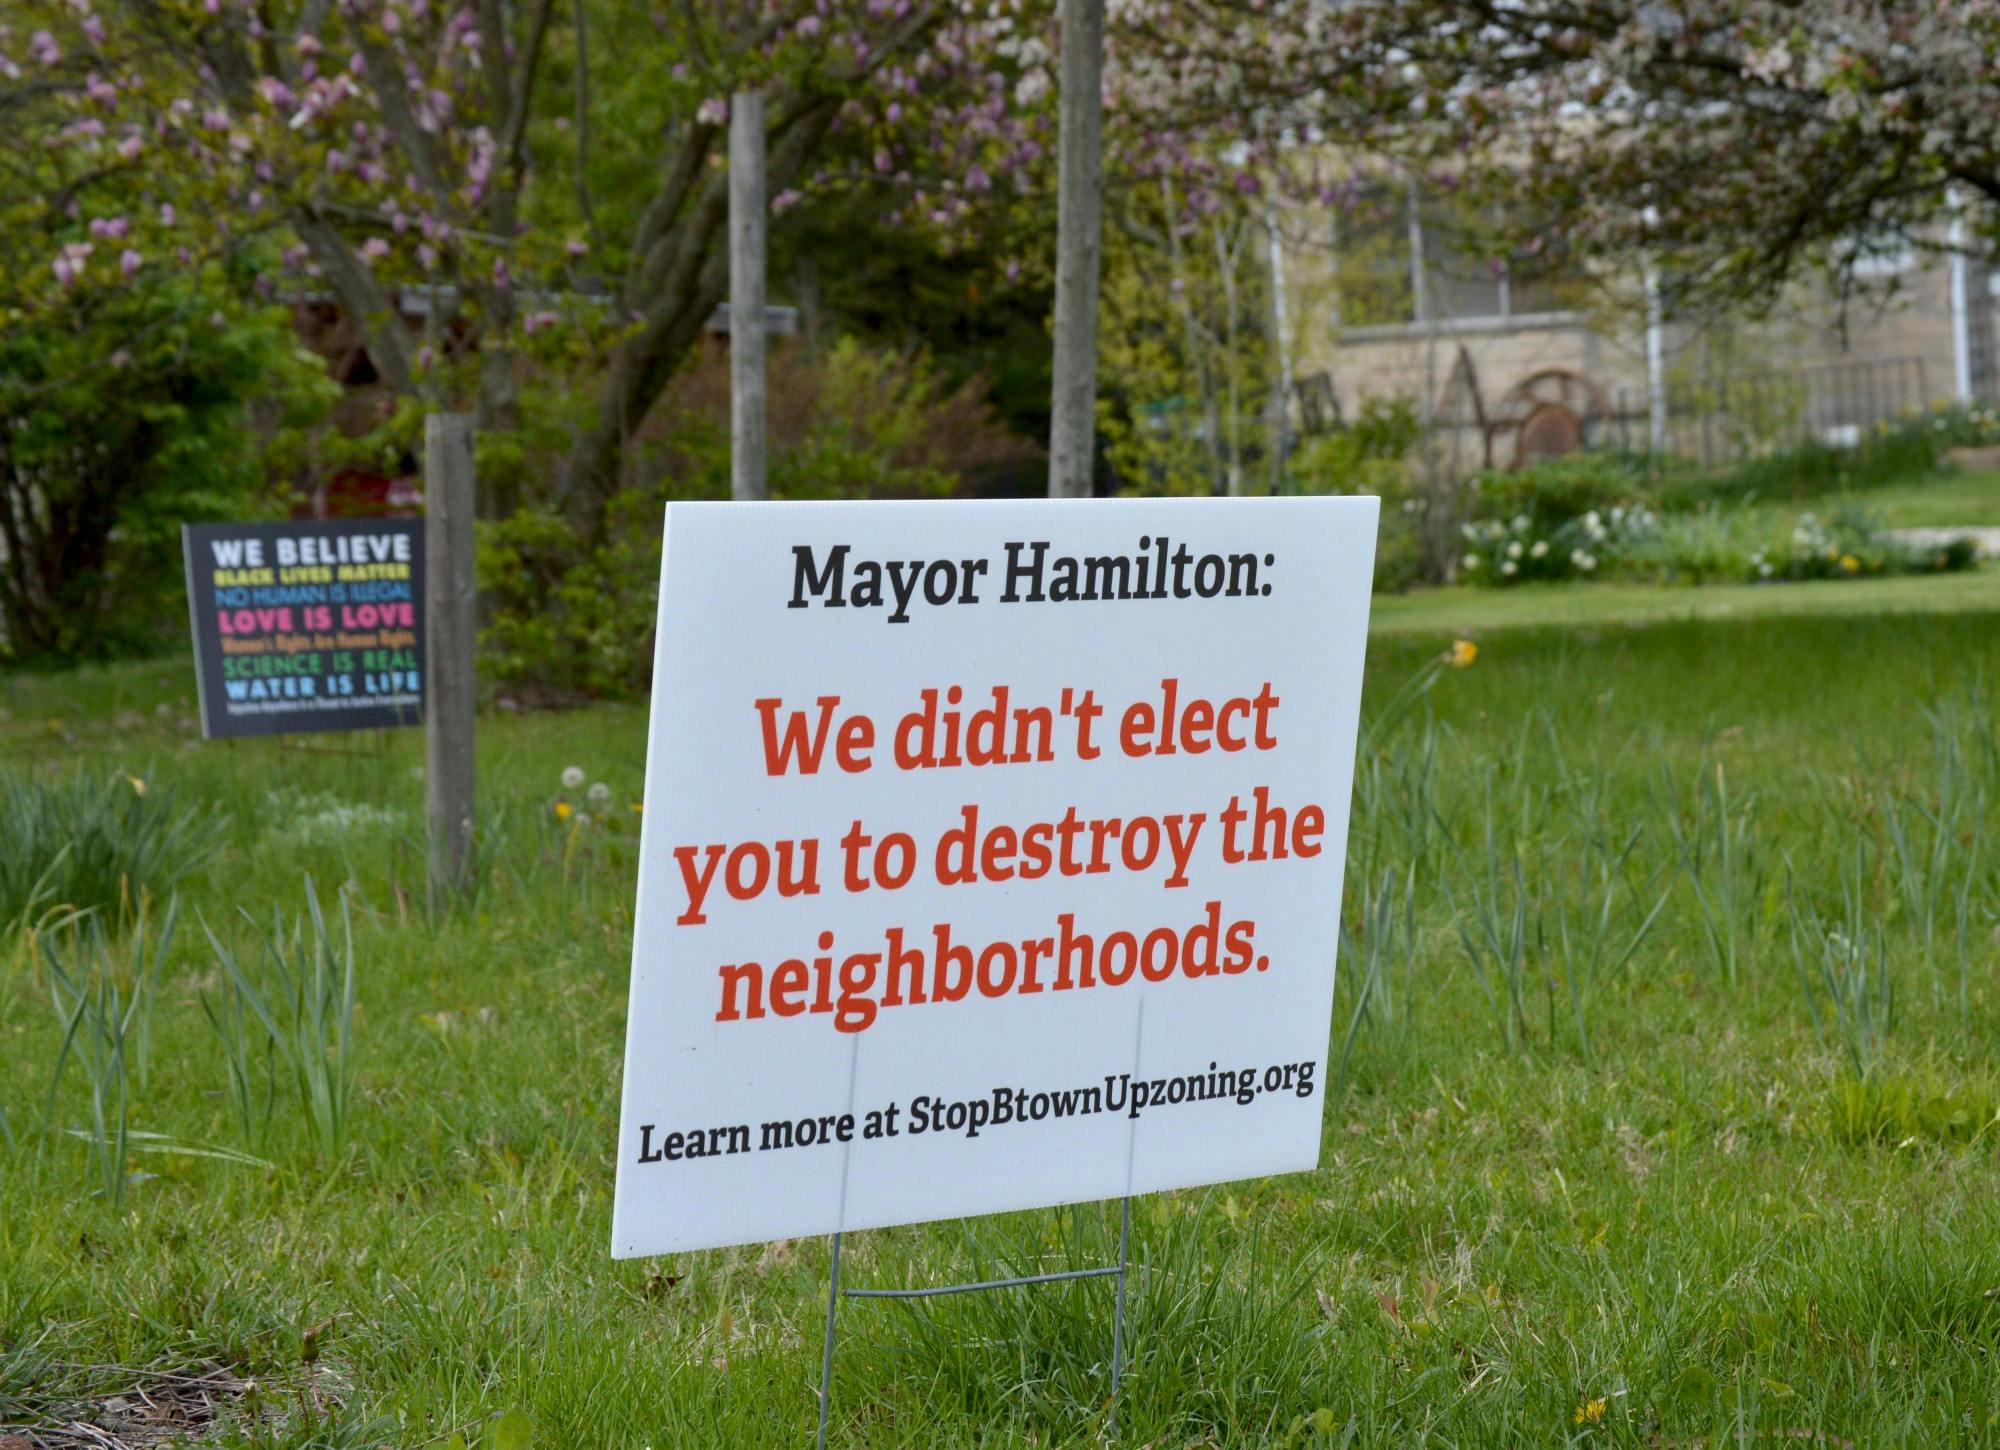 布莱恩公园(Bryan Park)附近的一块牌子上写着“汉密尔顿市长:我们不是选你来摧毁社区的。”“一个拟议的分区区域将允许在传统的独栋住宅社区建造复式住宅和类似的结构。”